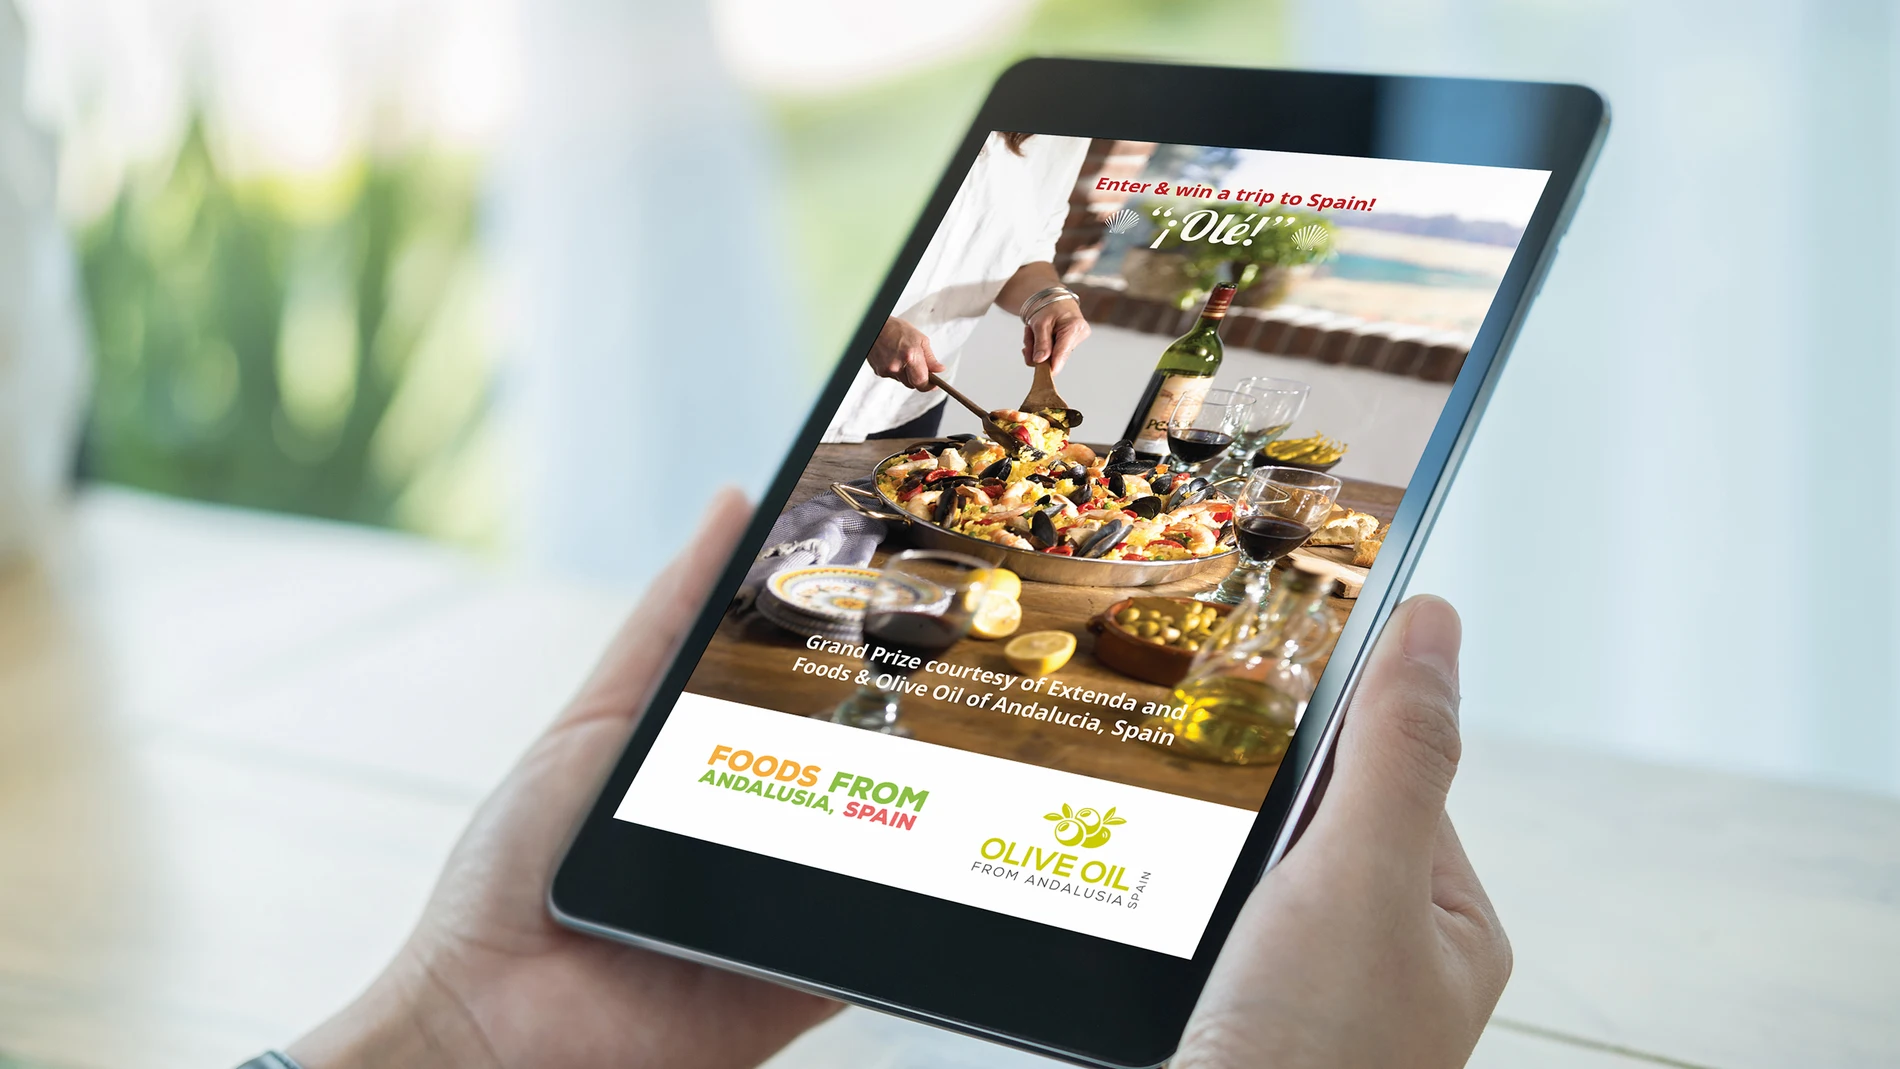 Imagen del concurso de paellas fotográfico en el punto online con mayor oferta de comida española, 'La Tienda.com'.